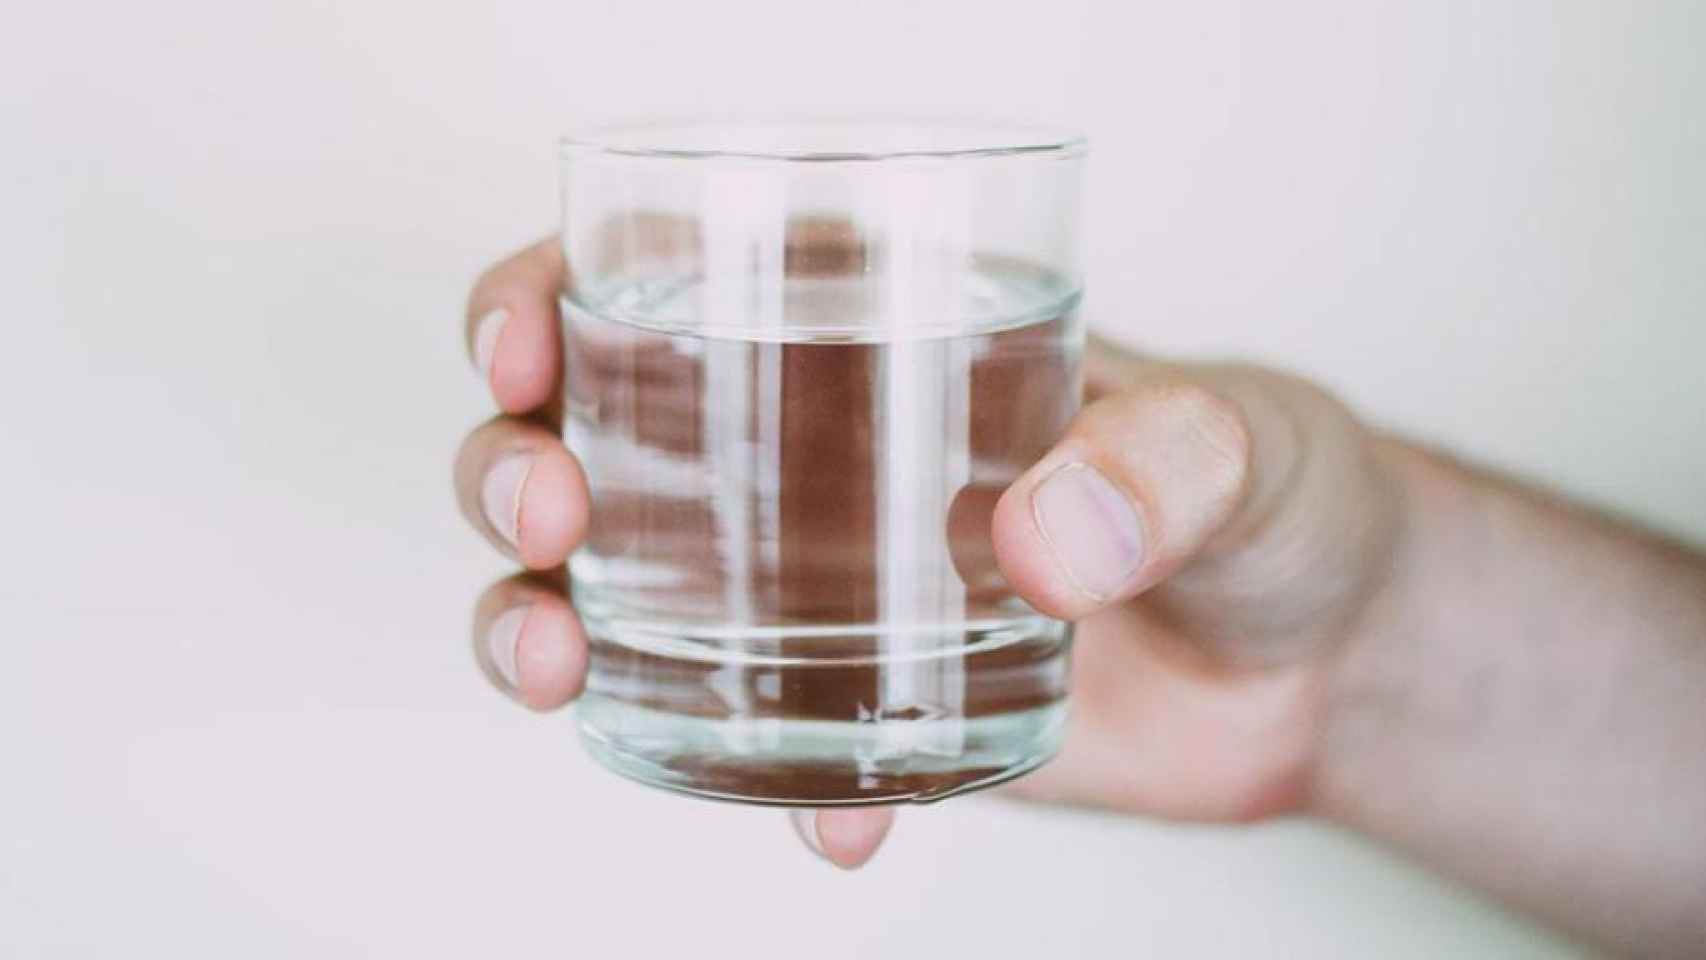 Por qué no deberías calentar jamás agua en un vaso en el microondas: el peligro de hacerlo